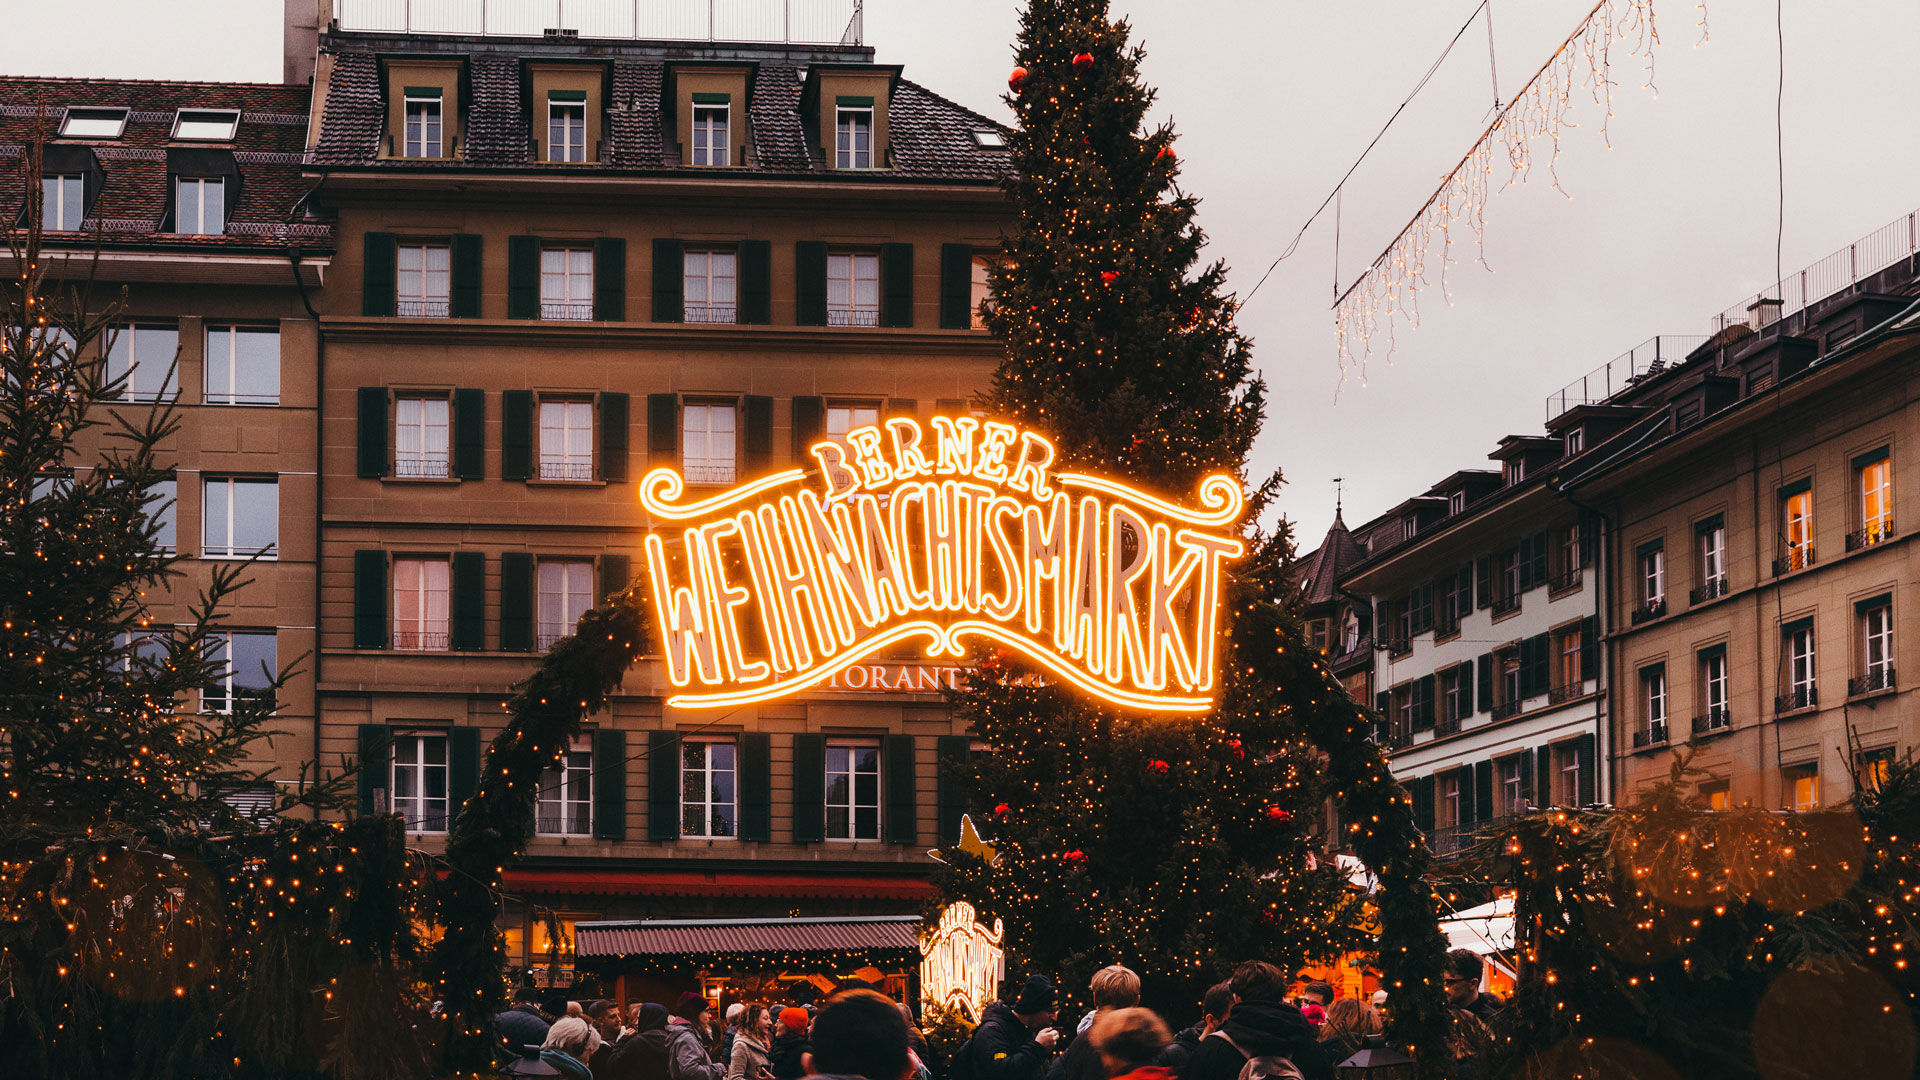 Berner Weihnachtsmarkt